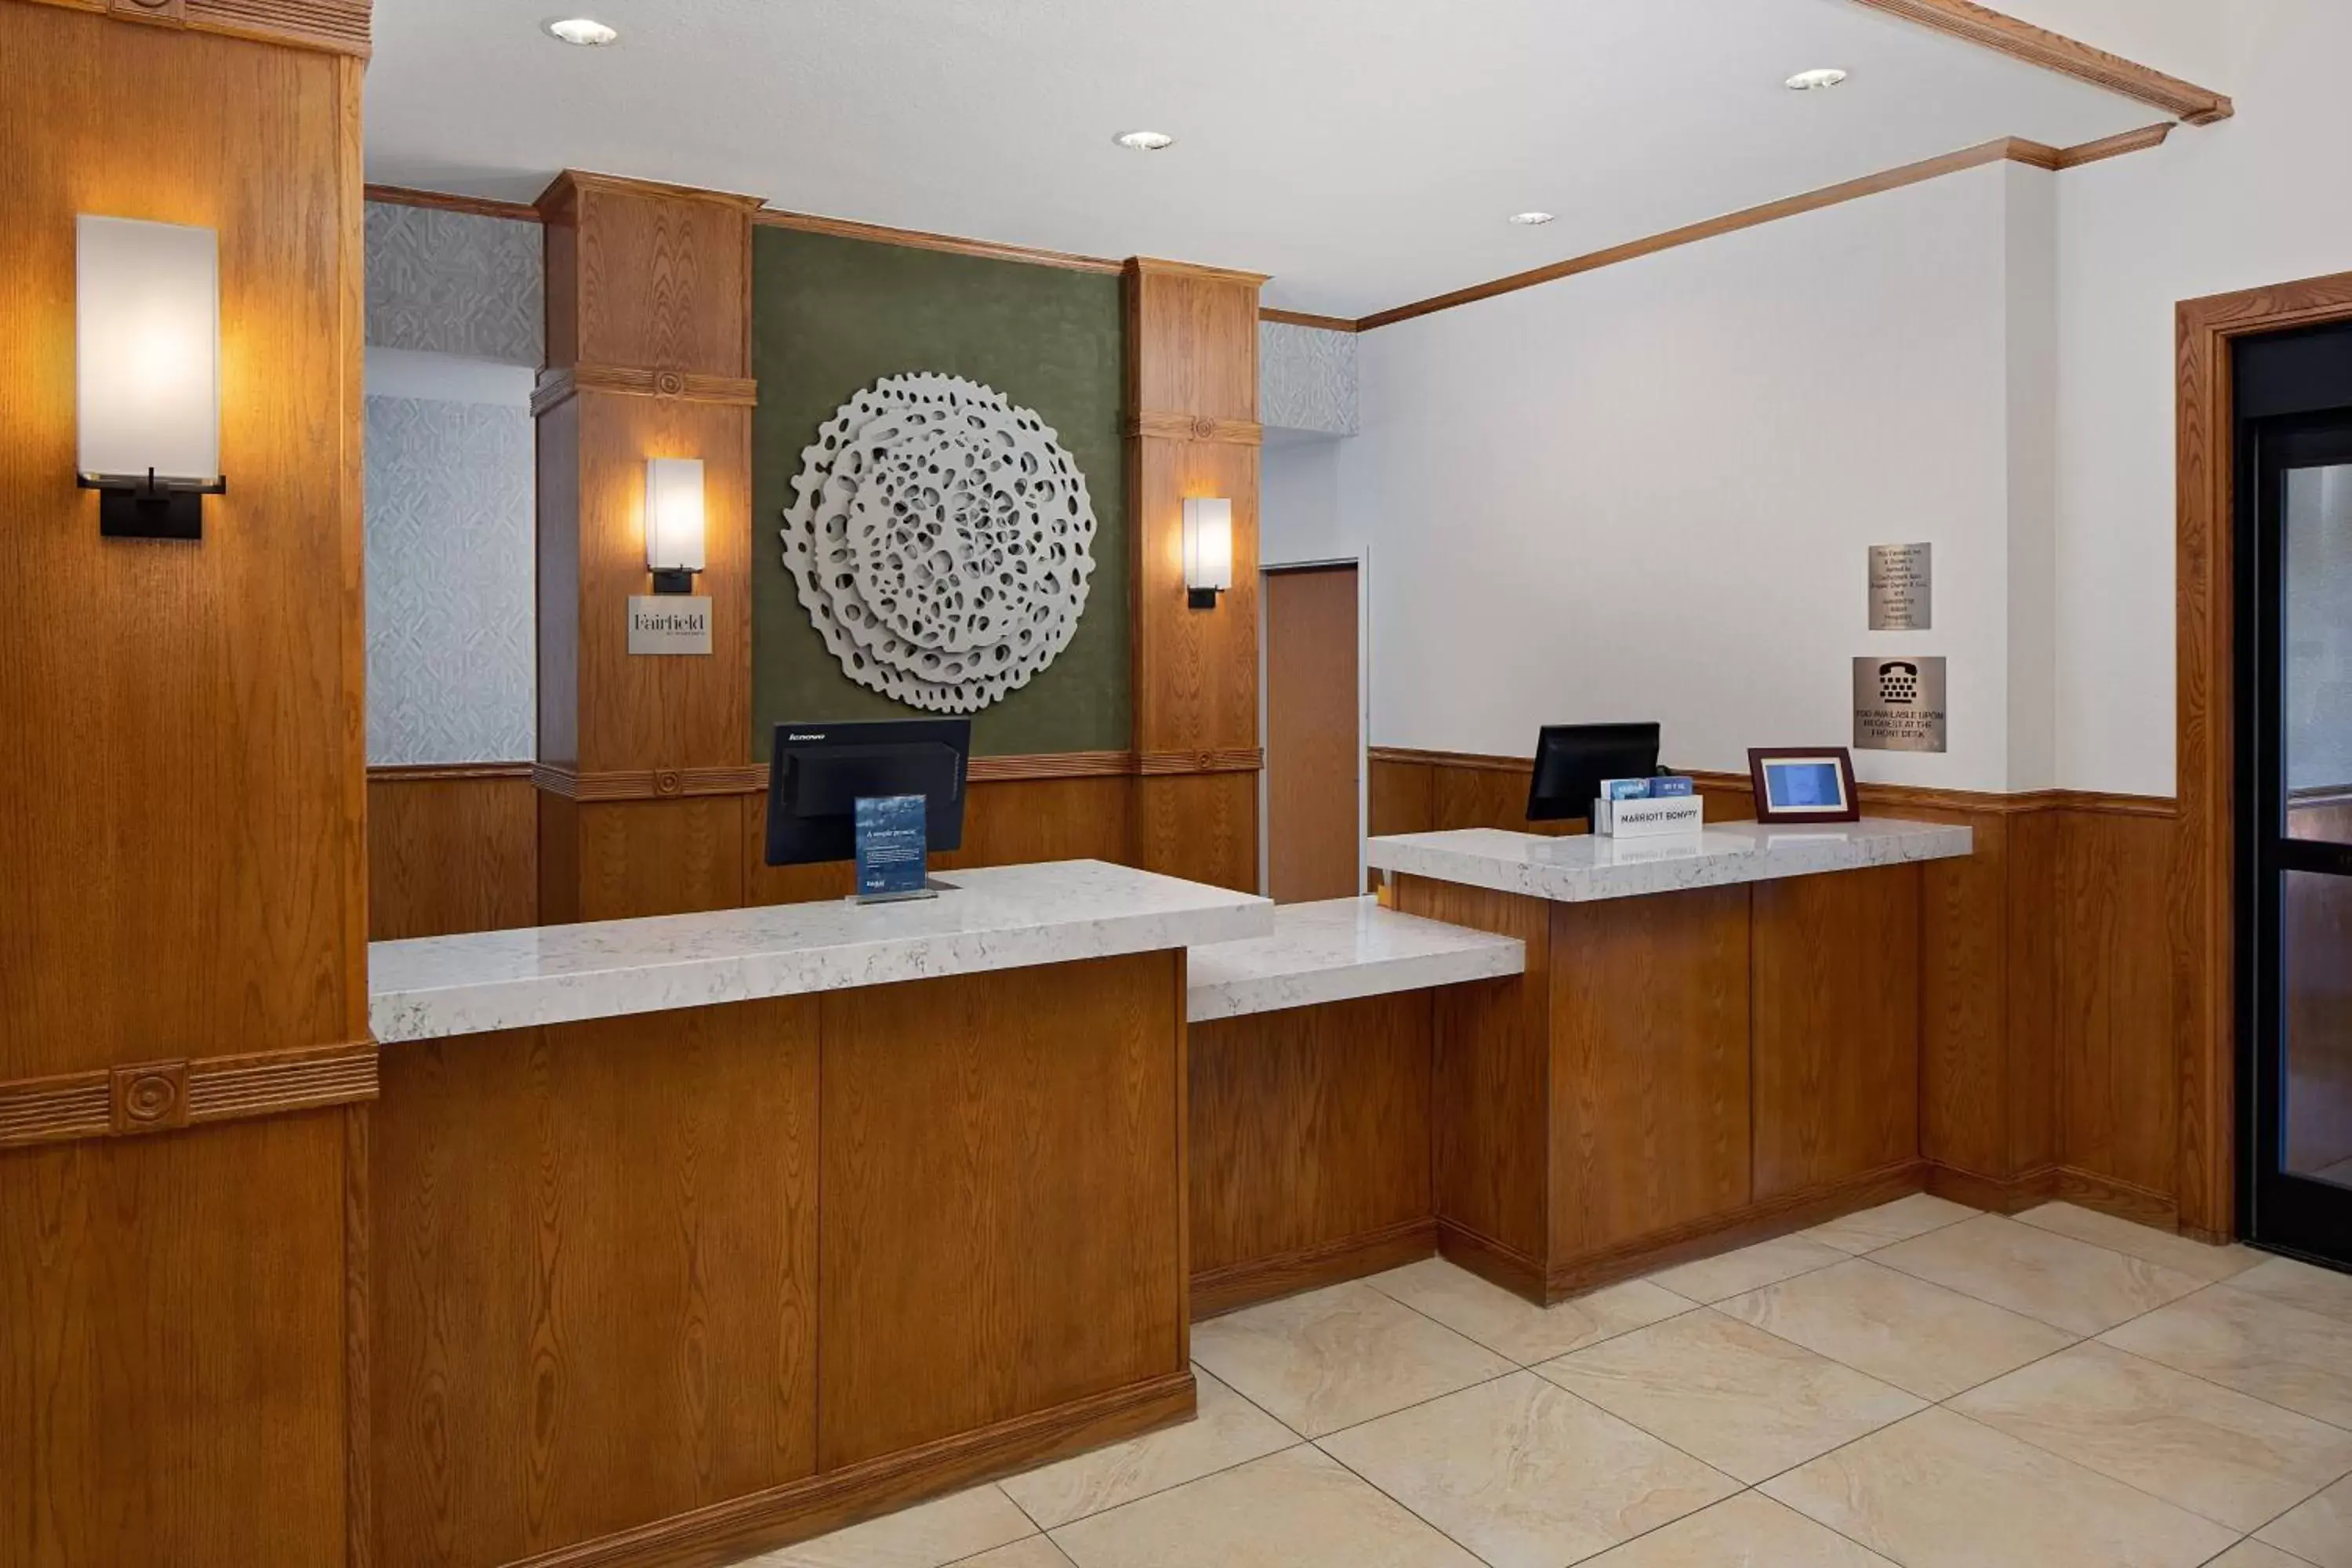 Lobby or reception, Lobby/Reception in Fairfield Inn & Suites San Angelo